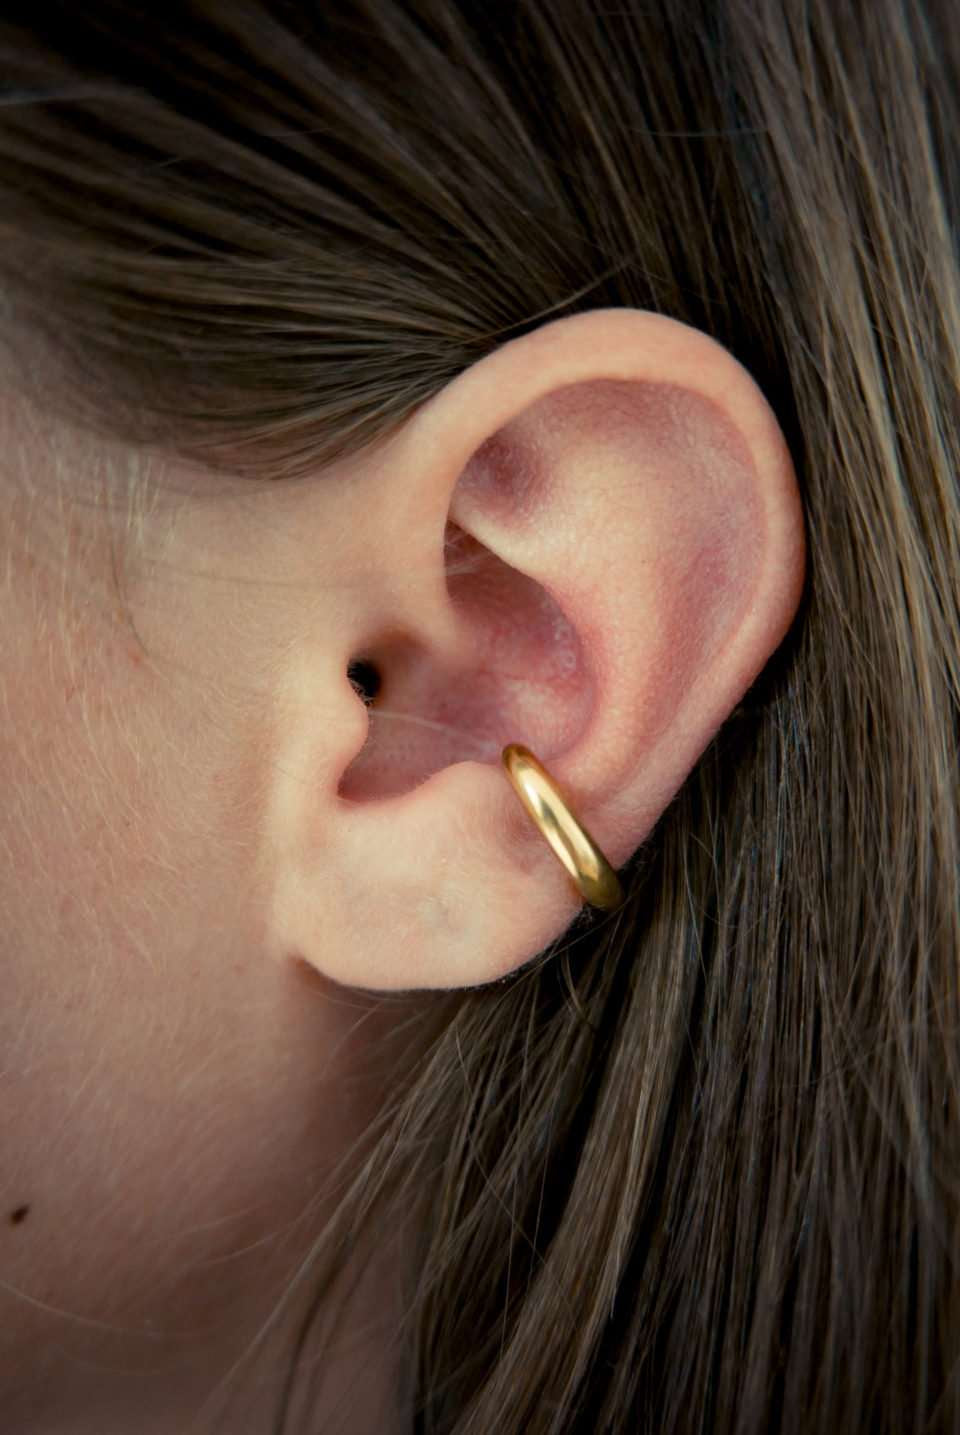 Bandhu Enfold ear cuff vergoldet